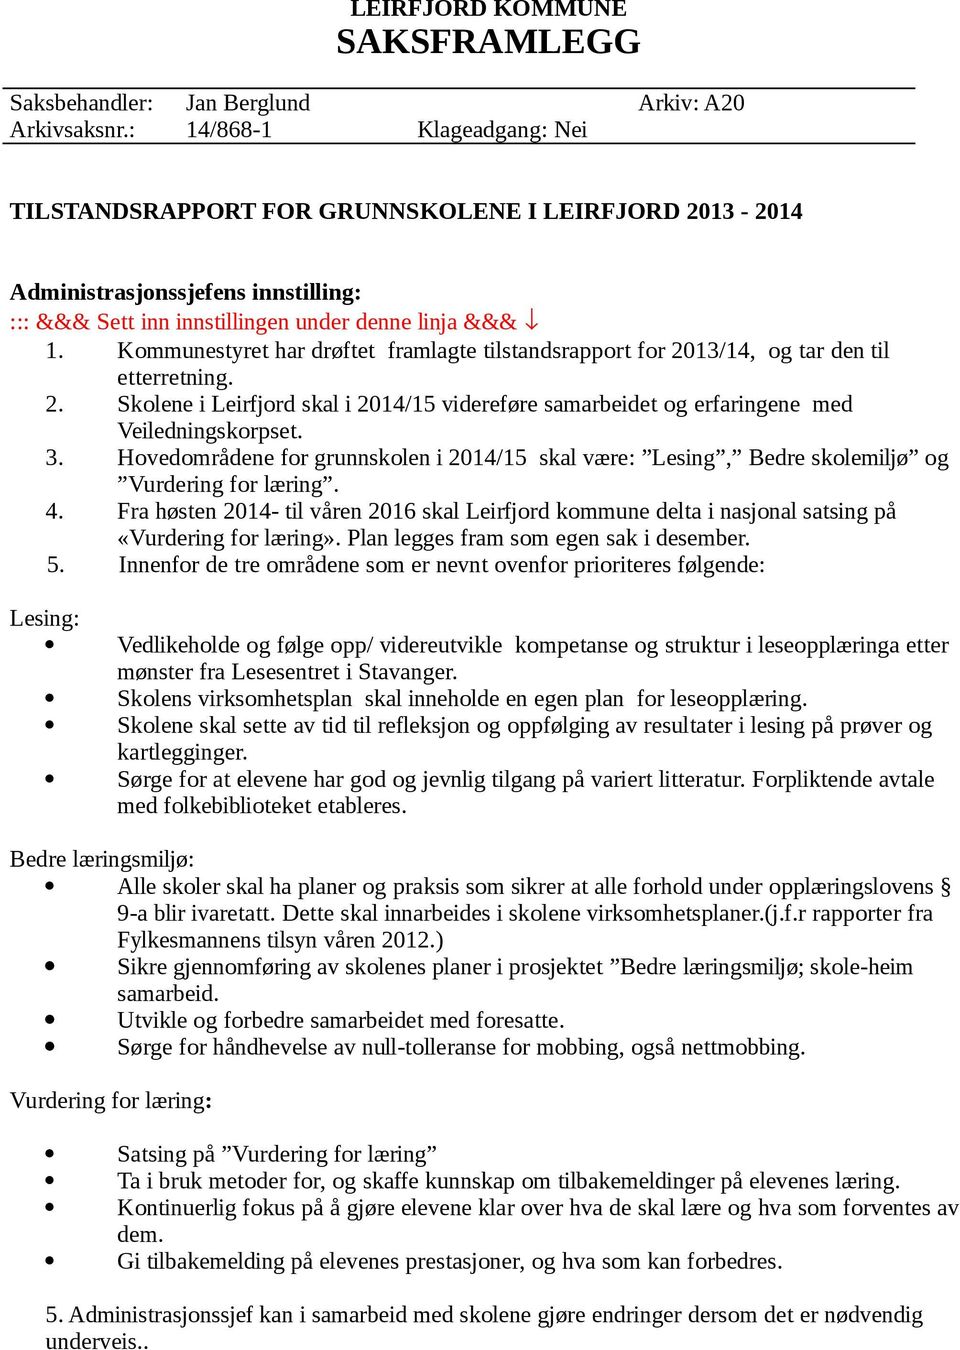 Kommunestyret har drøftet framlagte tilstandsrapport for 2013/14, og tar den til etterretning. 2. Skolene i Leirfjord skal i 2014/15 videreføre samarbeidet og erfaringene med Veiledningskorpset. 3.